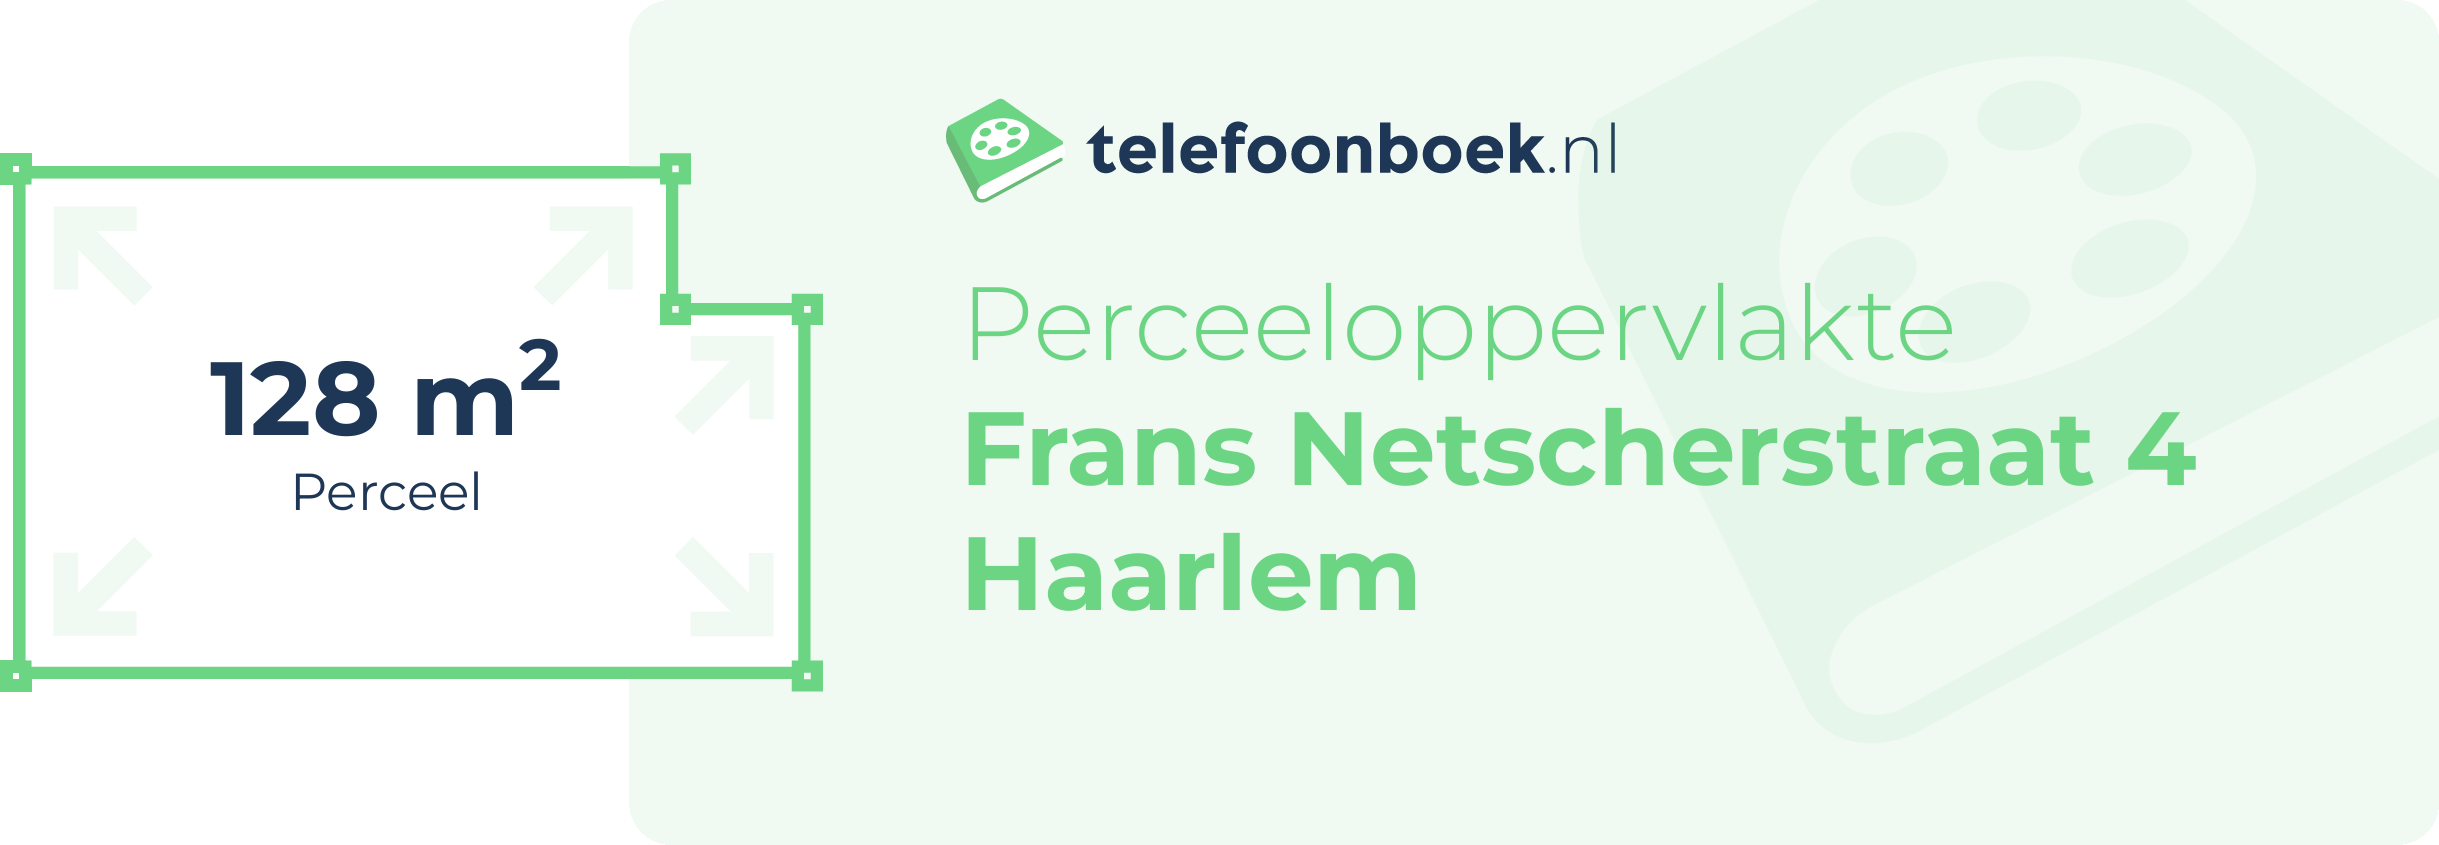 Perceeloppervlakte Frans Netscherstraat 4 Haarlem